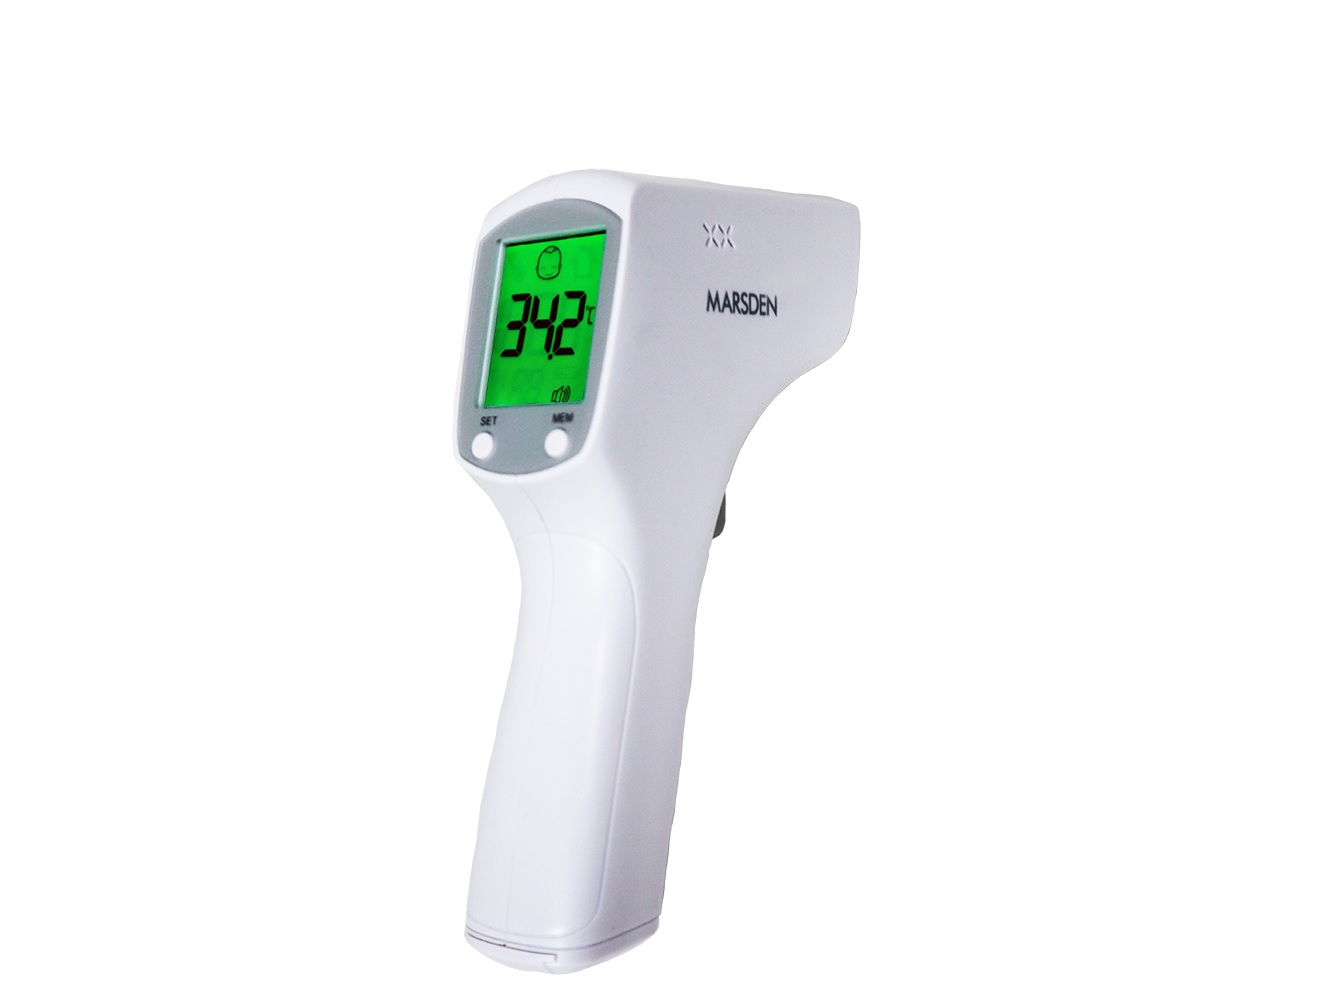 Točnost merjenja telesne temperature in sledljivost meritev